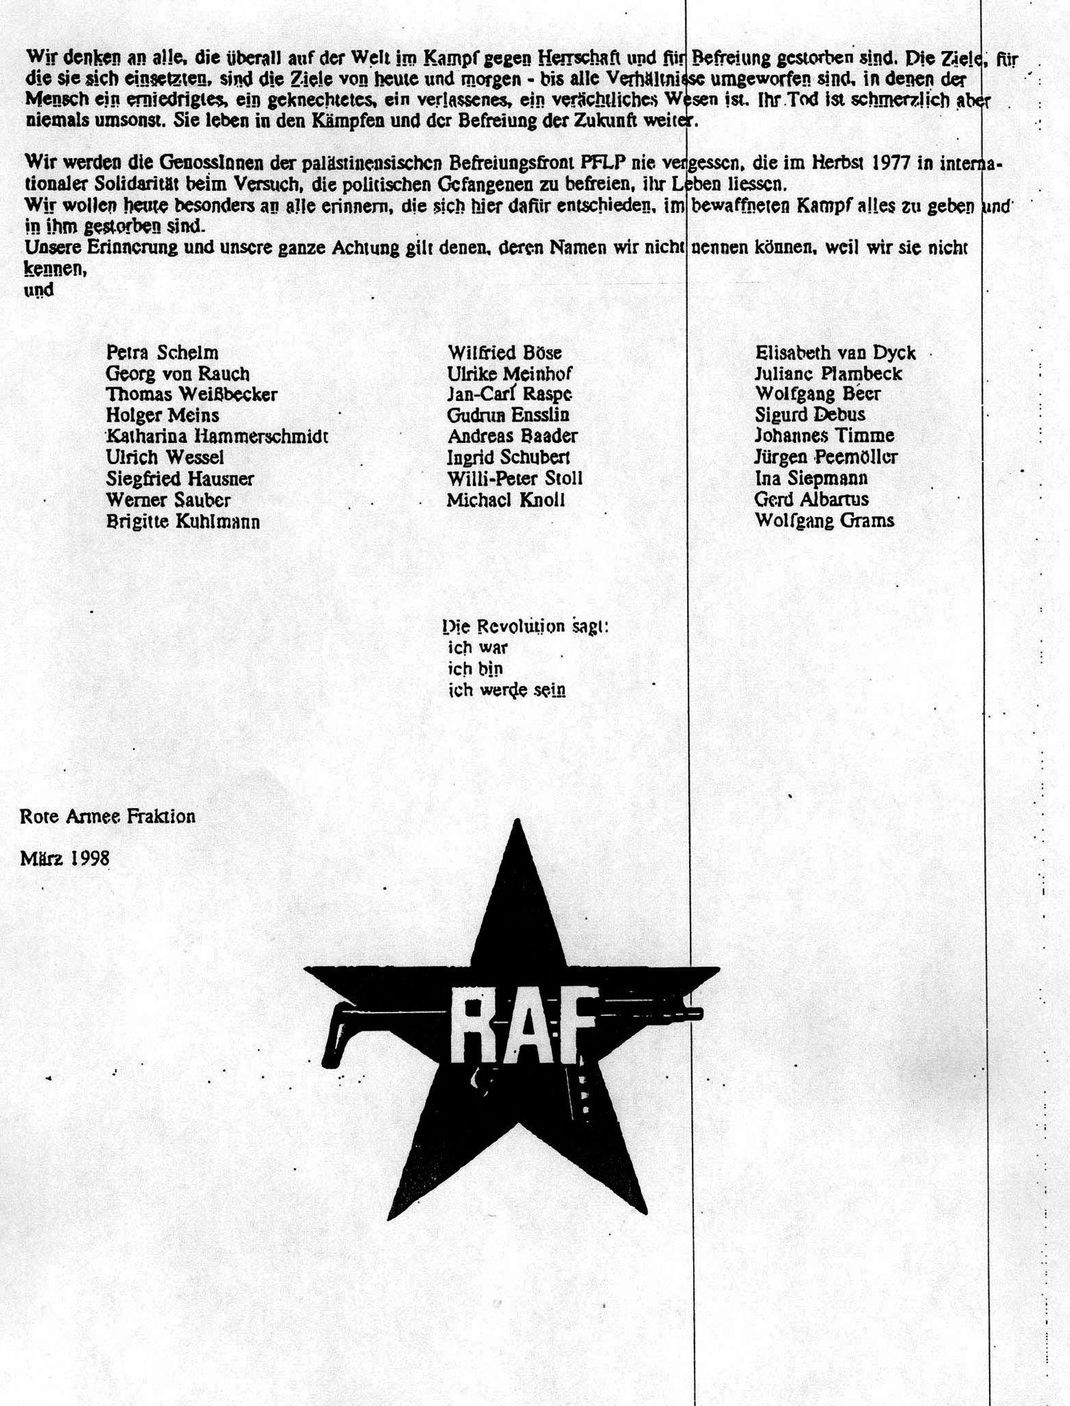 Mit einem Schreiben an die Nachrichtenagentur Reuters gab die Rote Armee Fraktion (RAF) im Jahr 1998 ihre Selbstauflösung bekannt. Das Bild zeigt die letzte Seite des Schreibens.